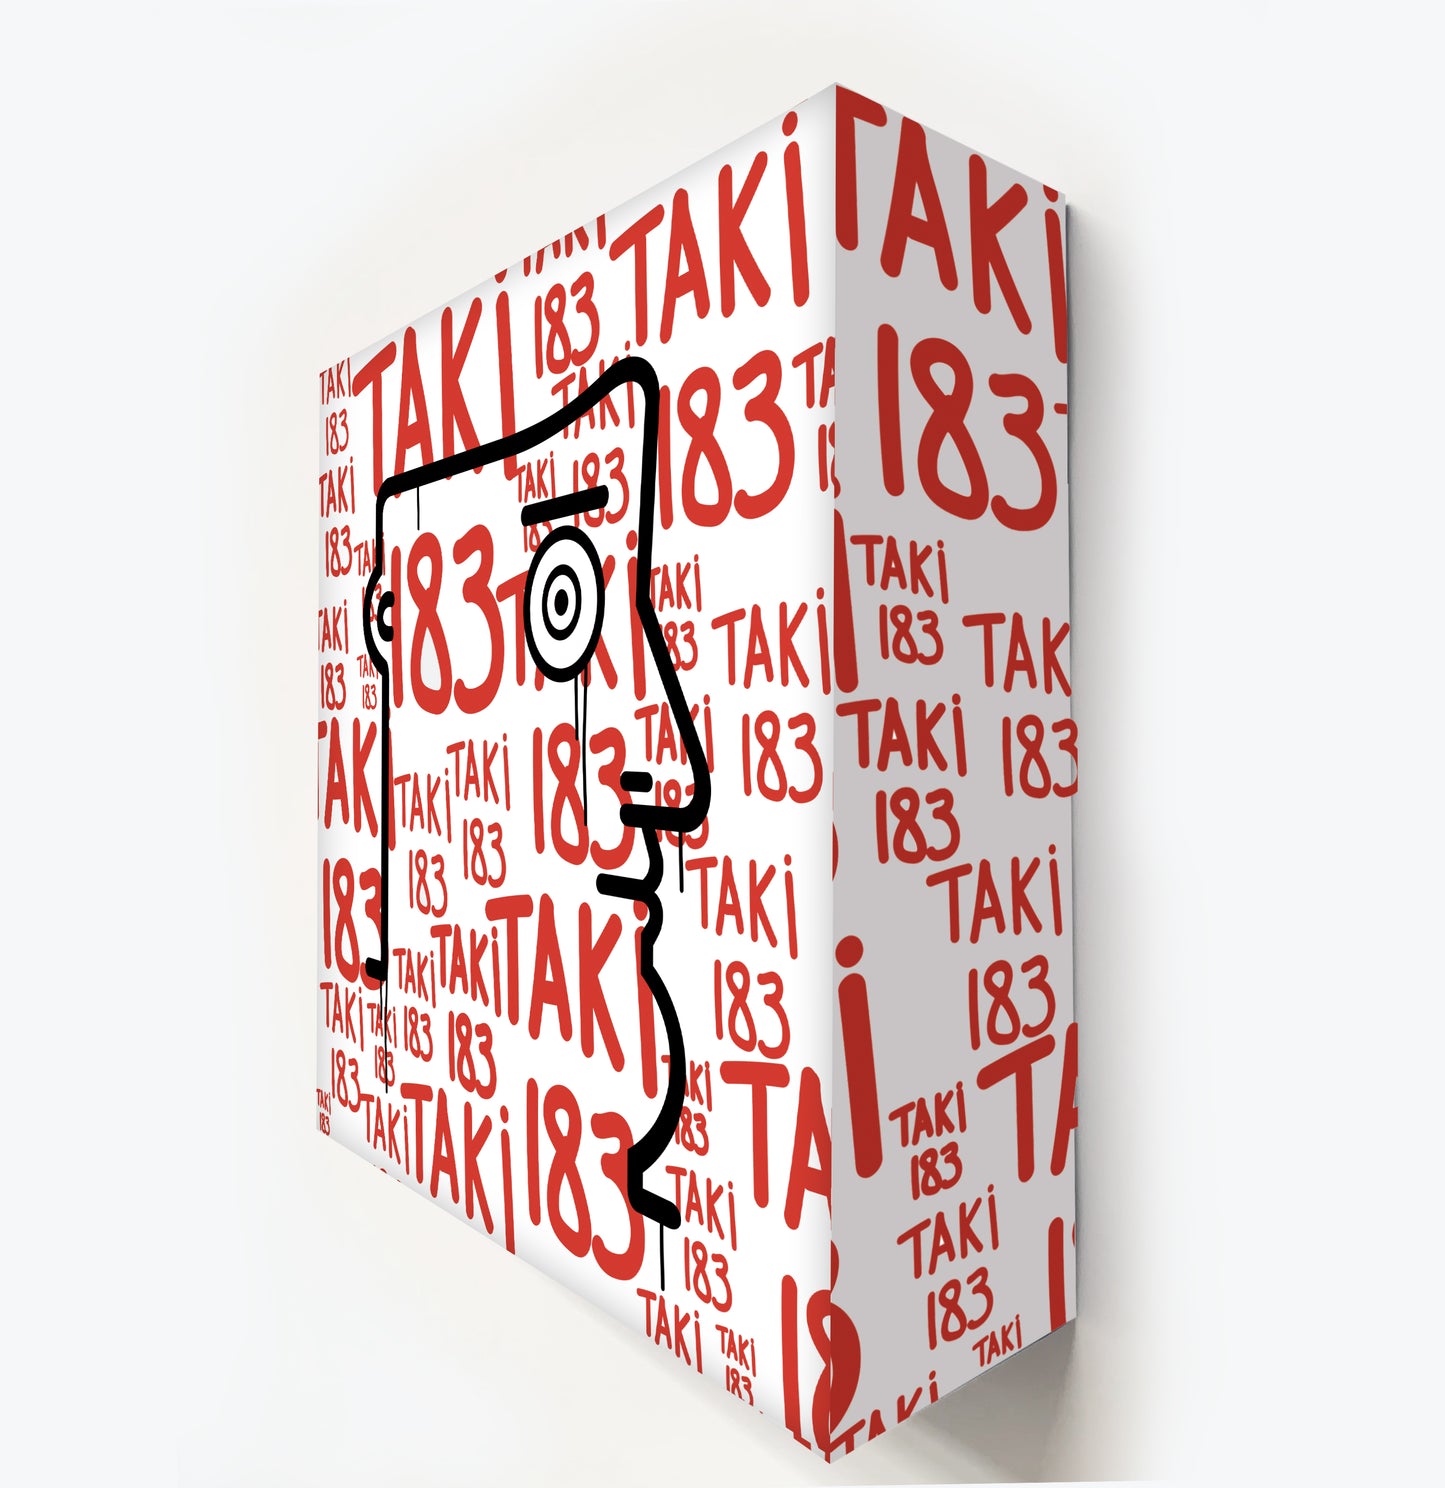 Taki 183 (TagStyle pattern IABO classic leitmotiv)